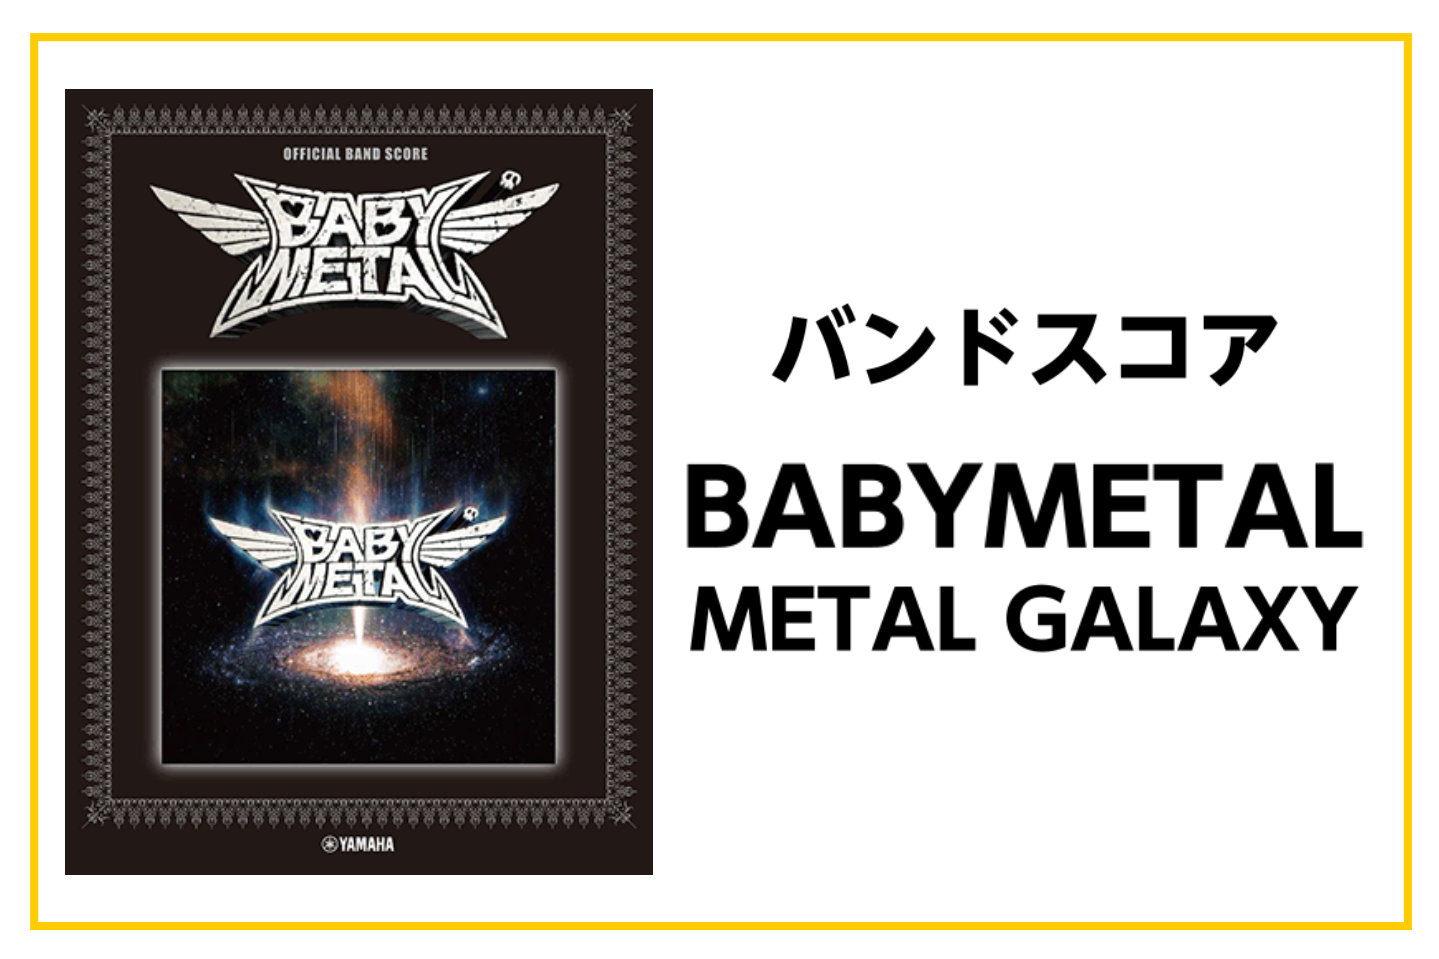 【バンドスコア】BABYMETAL METAL GALAXY オフィシャルバンドスコア入荷!!